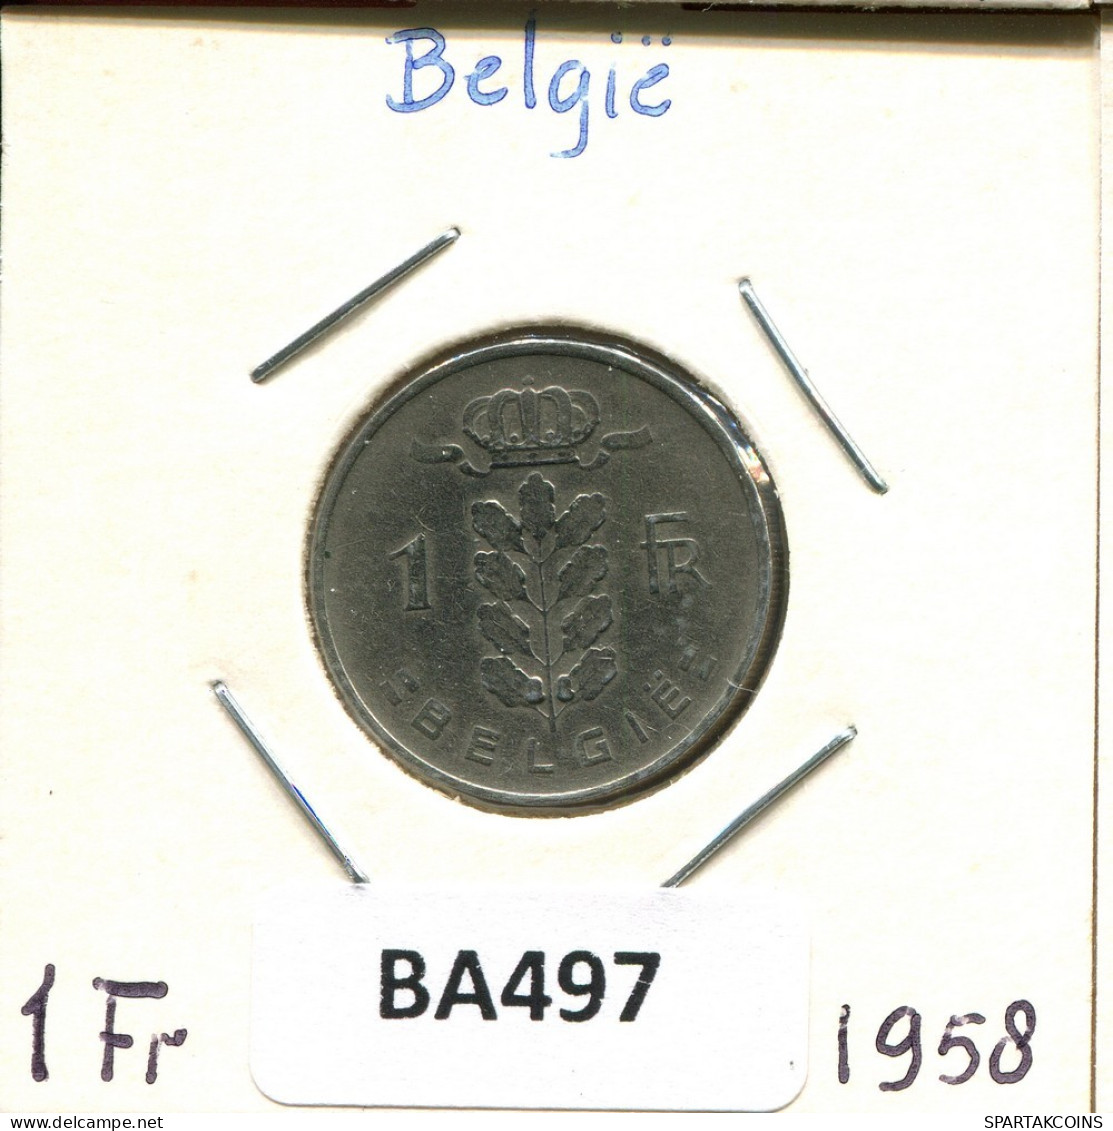 1 FRANC 1958 DUTCH Text BÉLGICA BELGIUM Moneda #BA497.E.A - 1 Franc